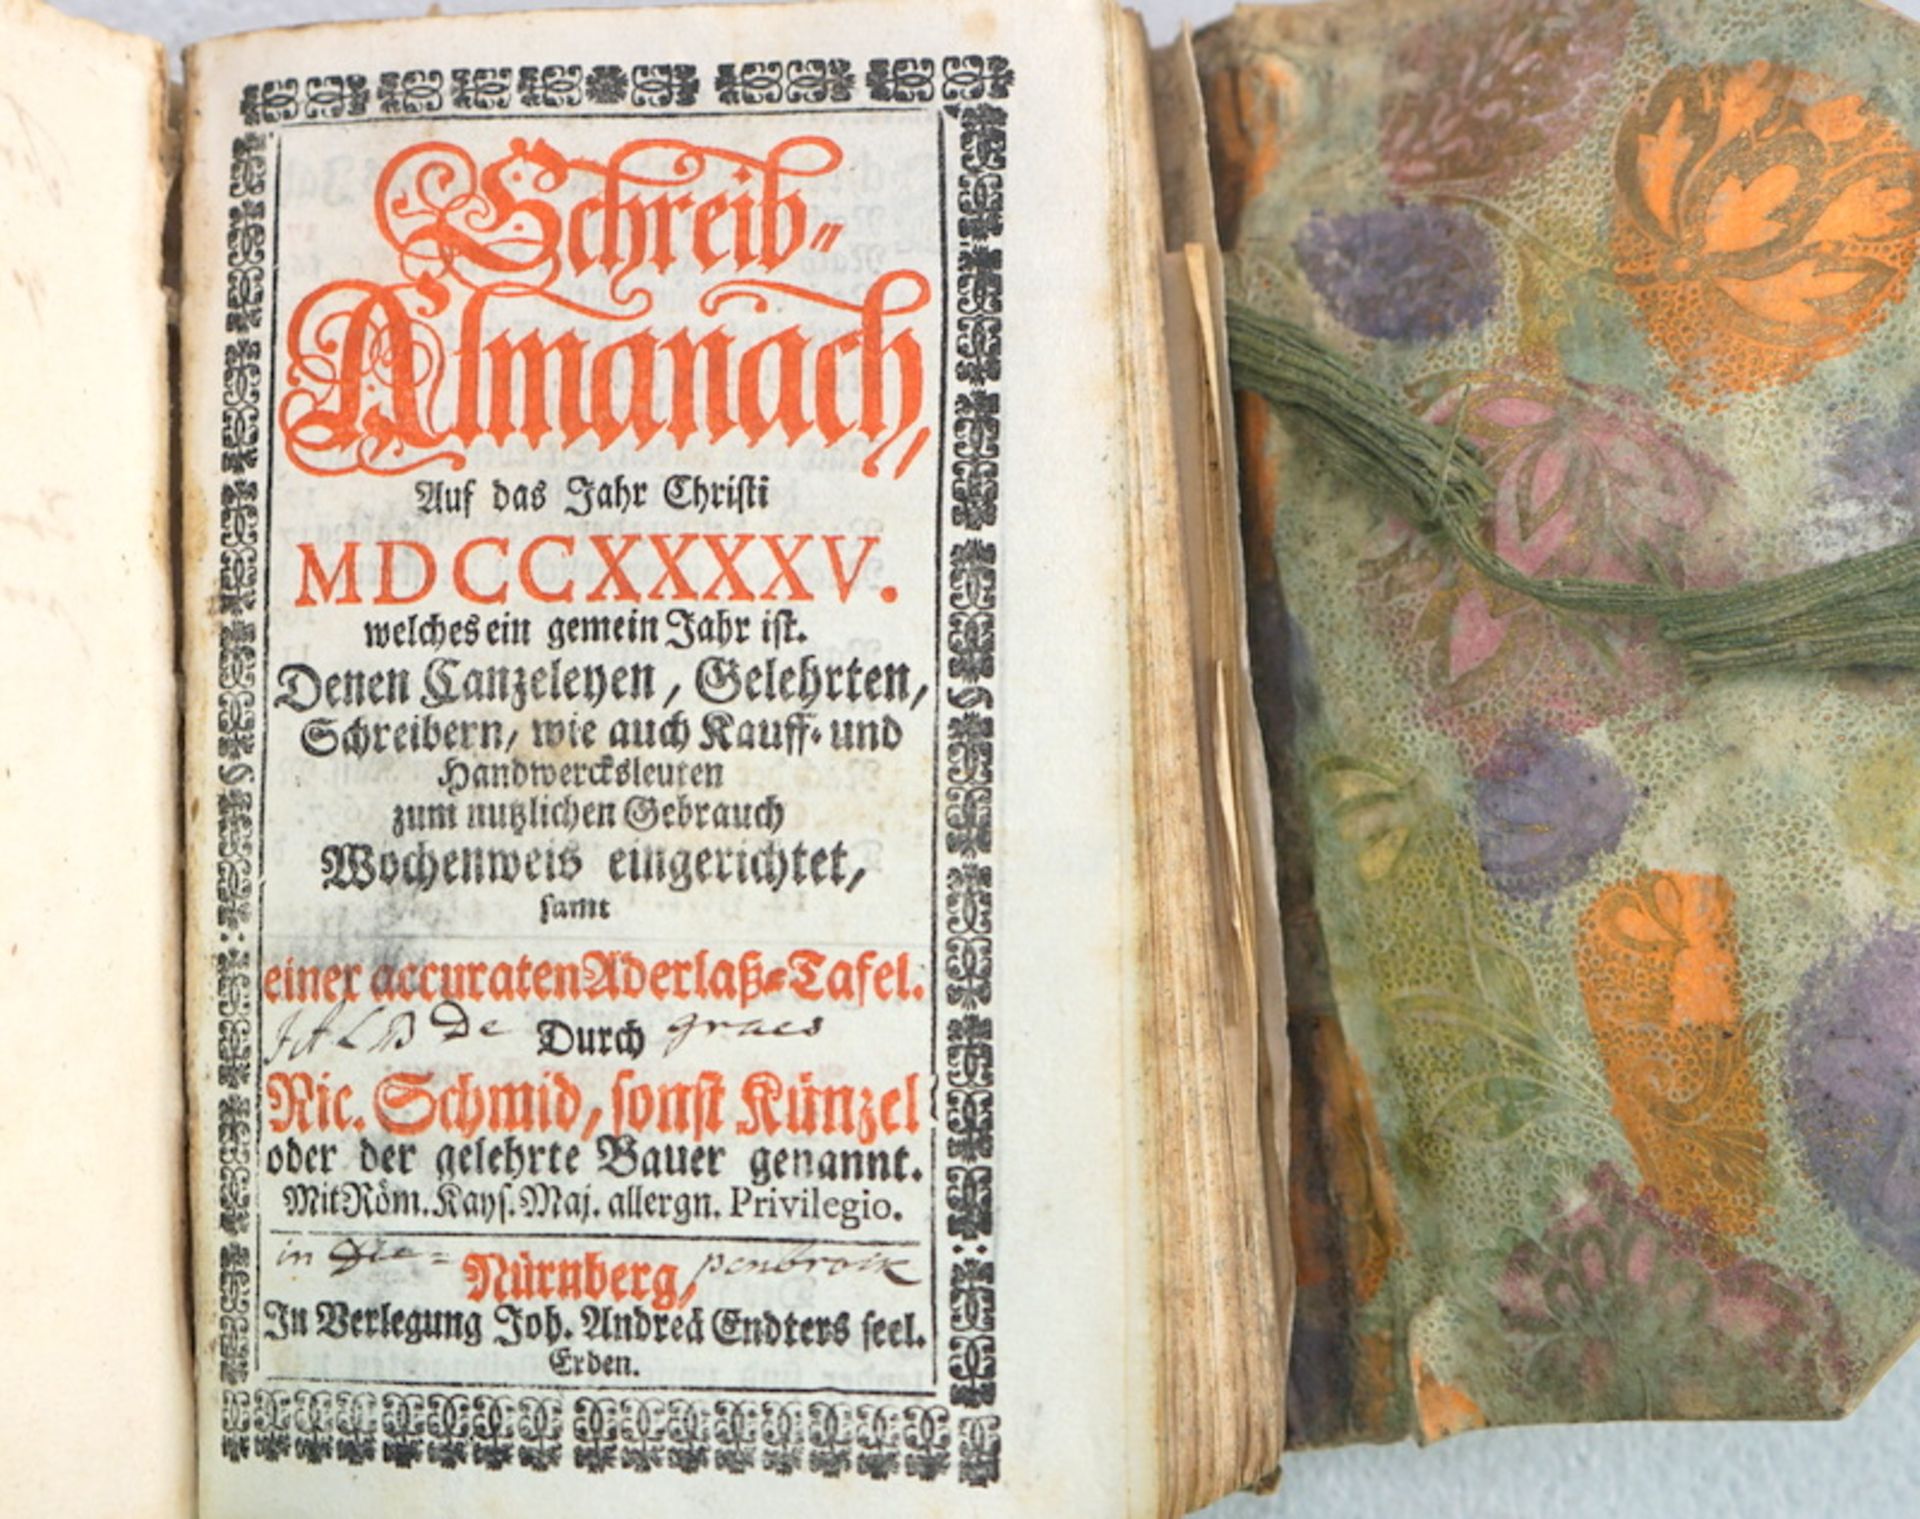 Schreib Almanach von 1745 als Album Amicorum